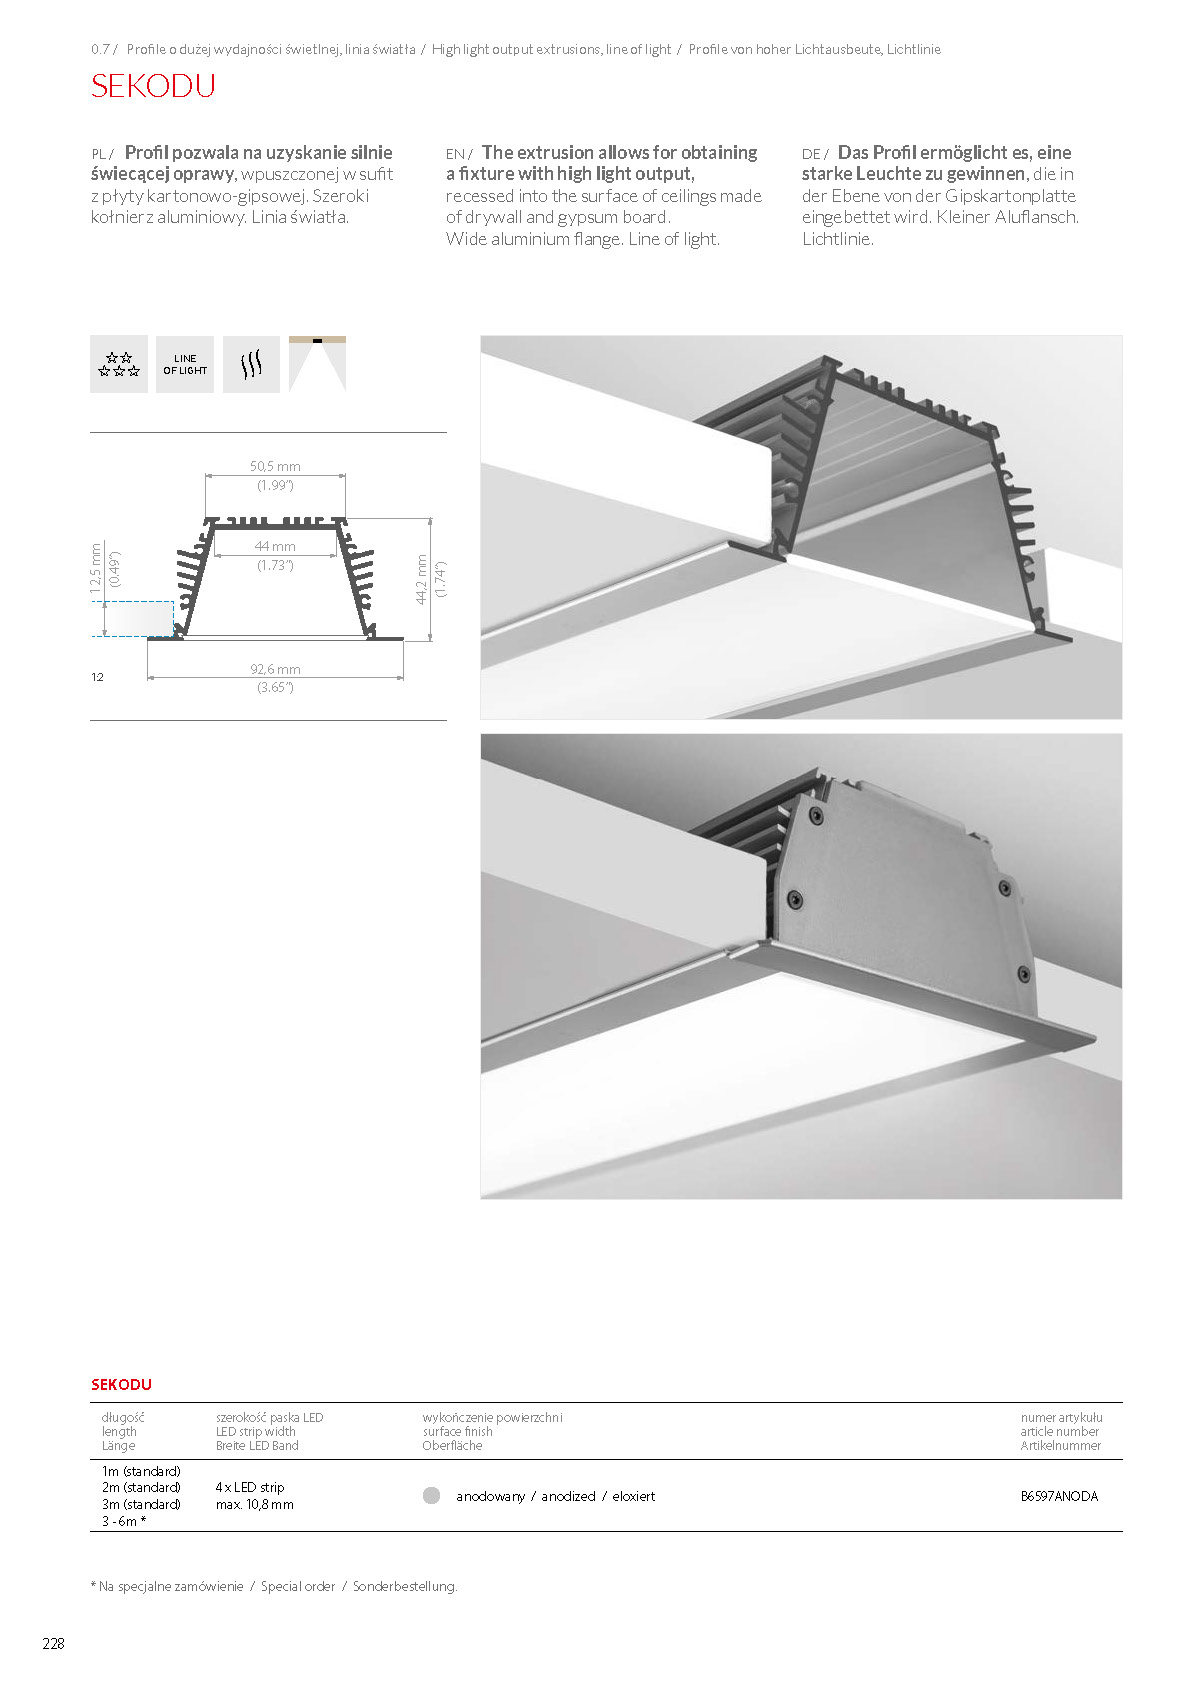 SEKODU, profile | stair-lighting.com, B6597 profile, SEKODU klus profile, SEKODU channel, l